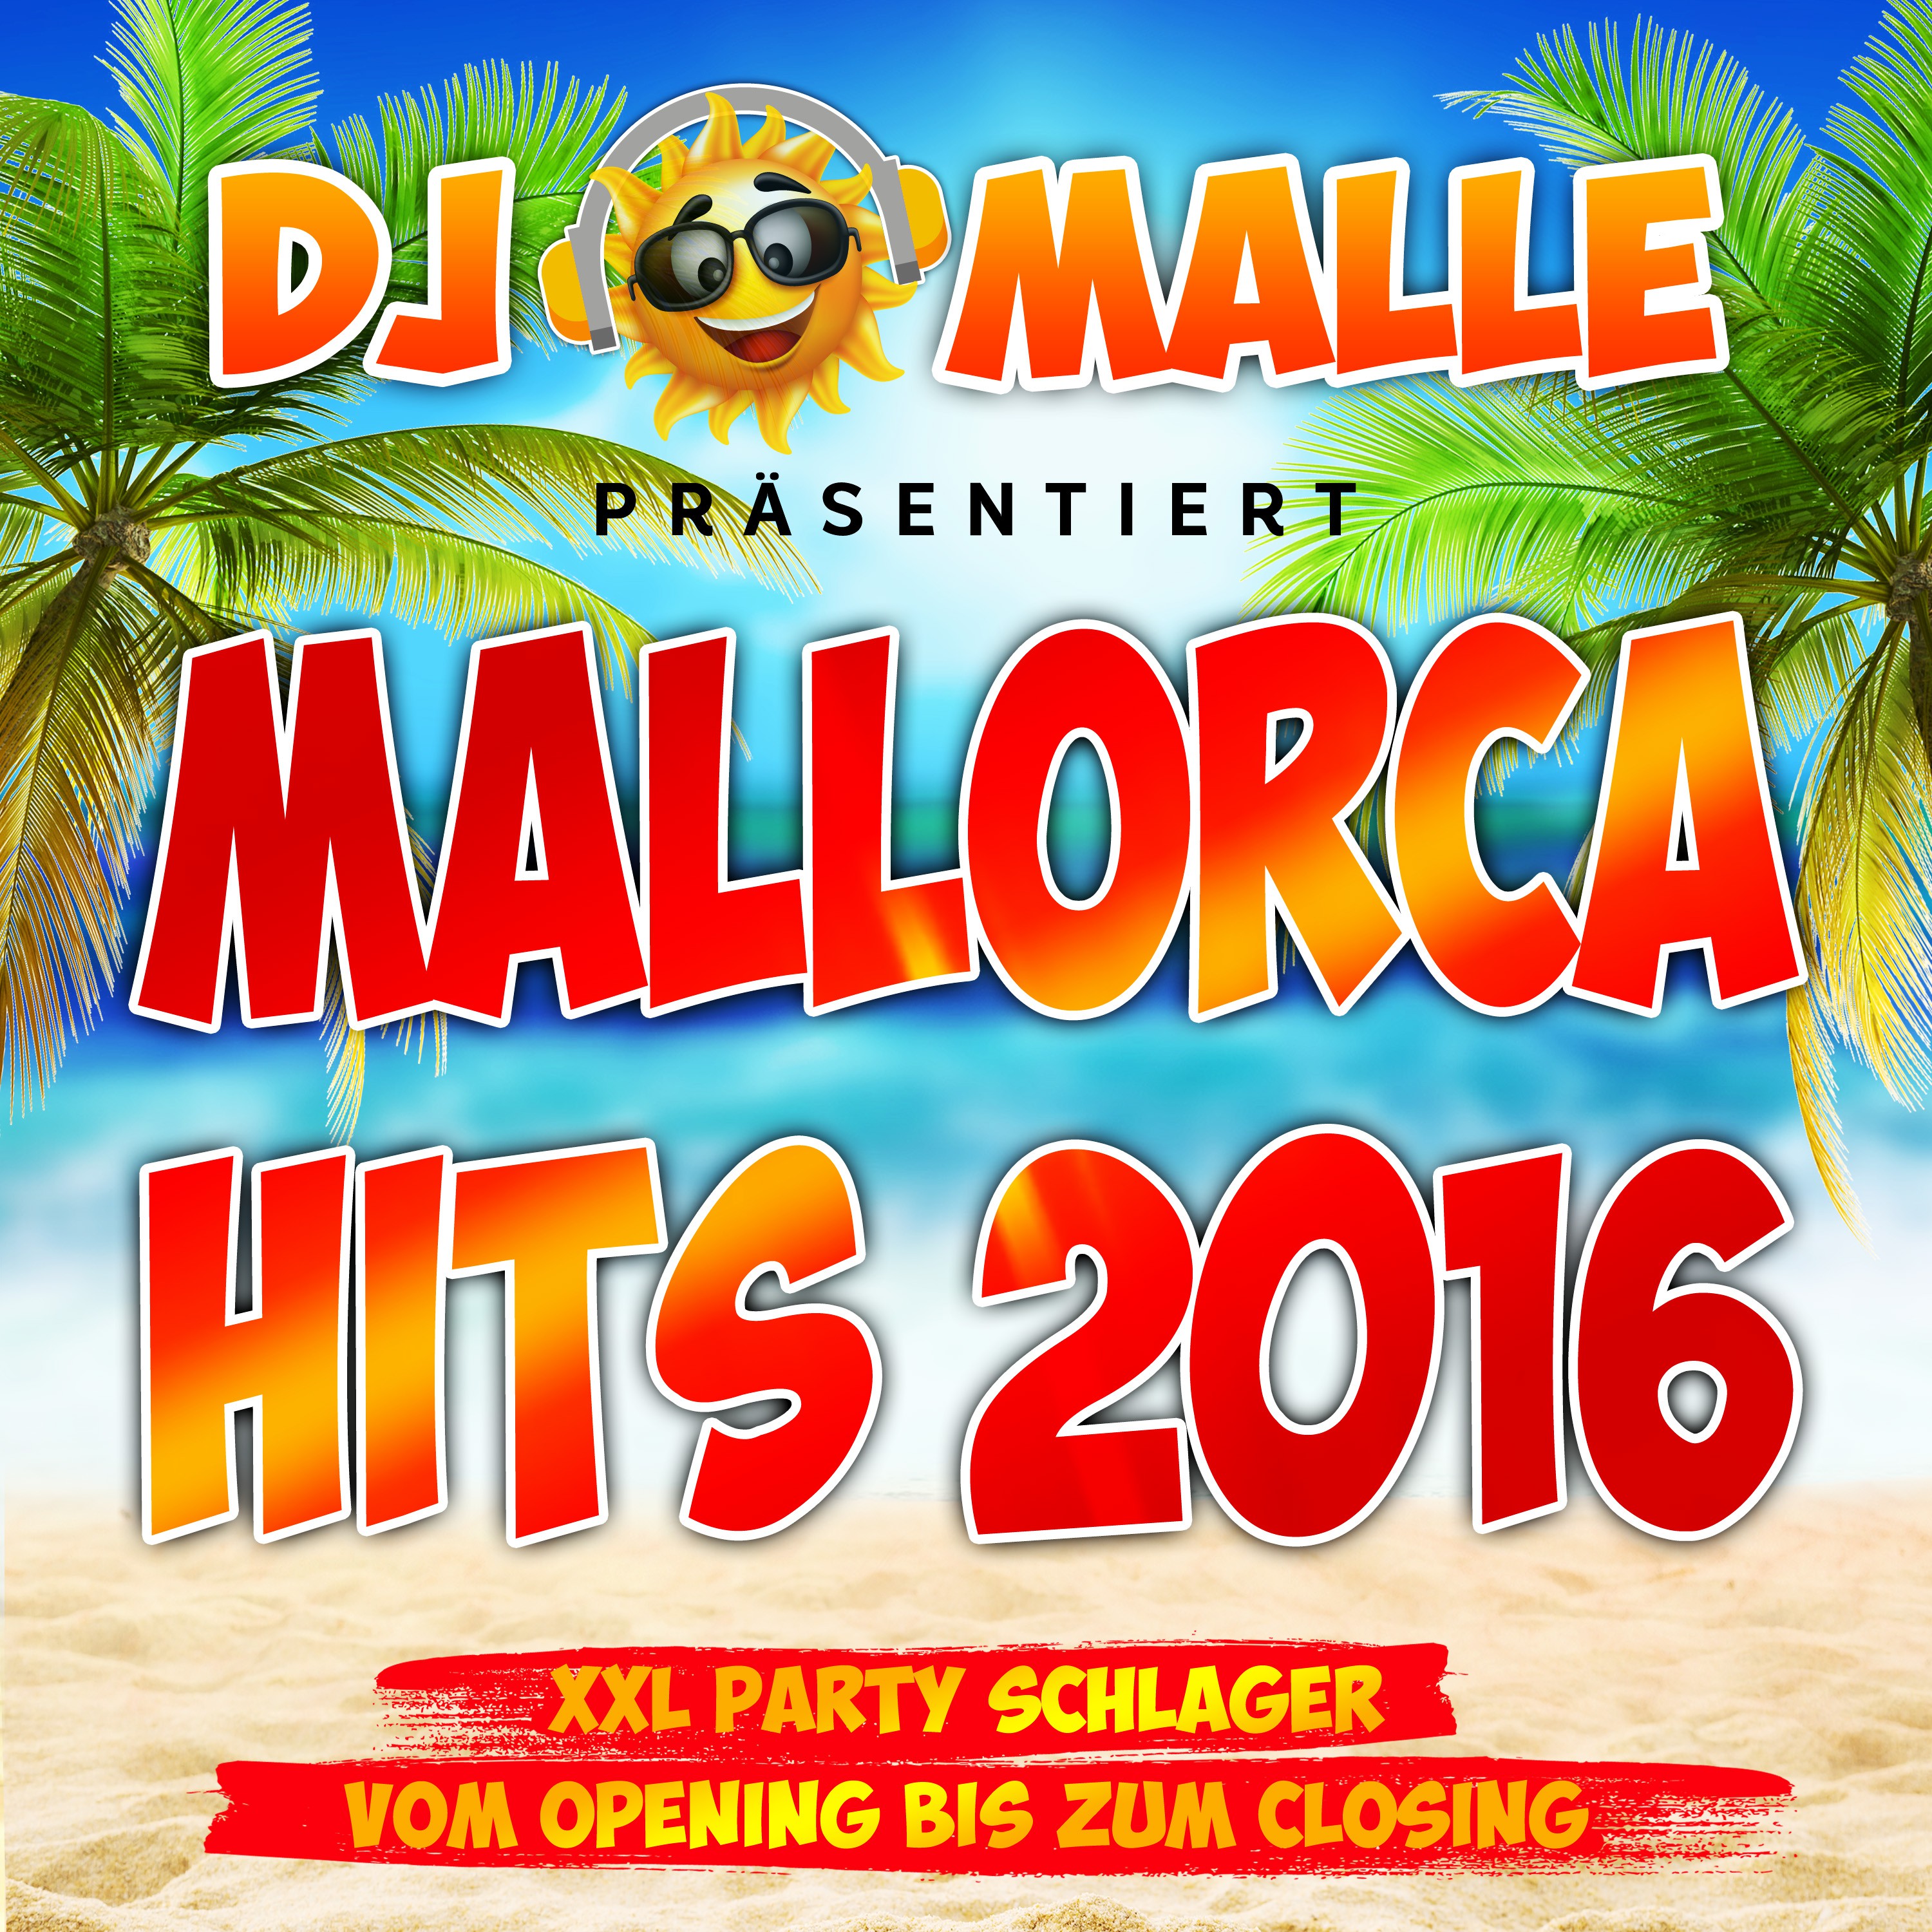 DJ Malle pr sentiert Mallorca Hits 2016  XXL Party Schlager vom Opeing bis zum Closing